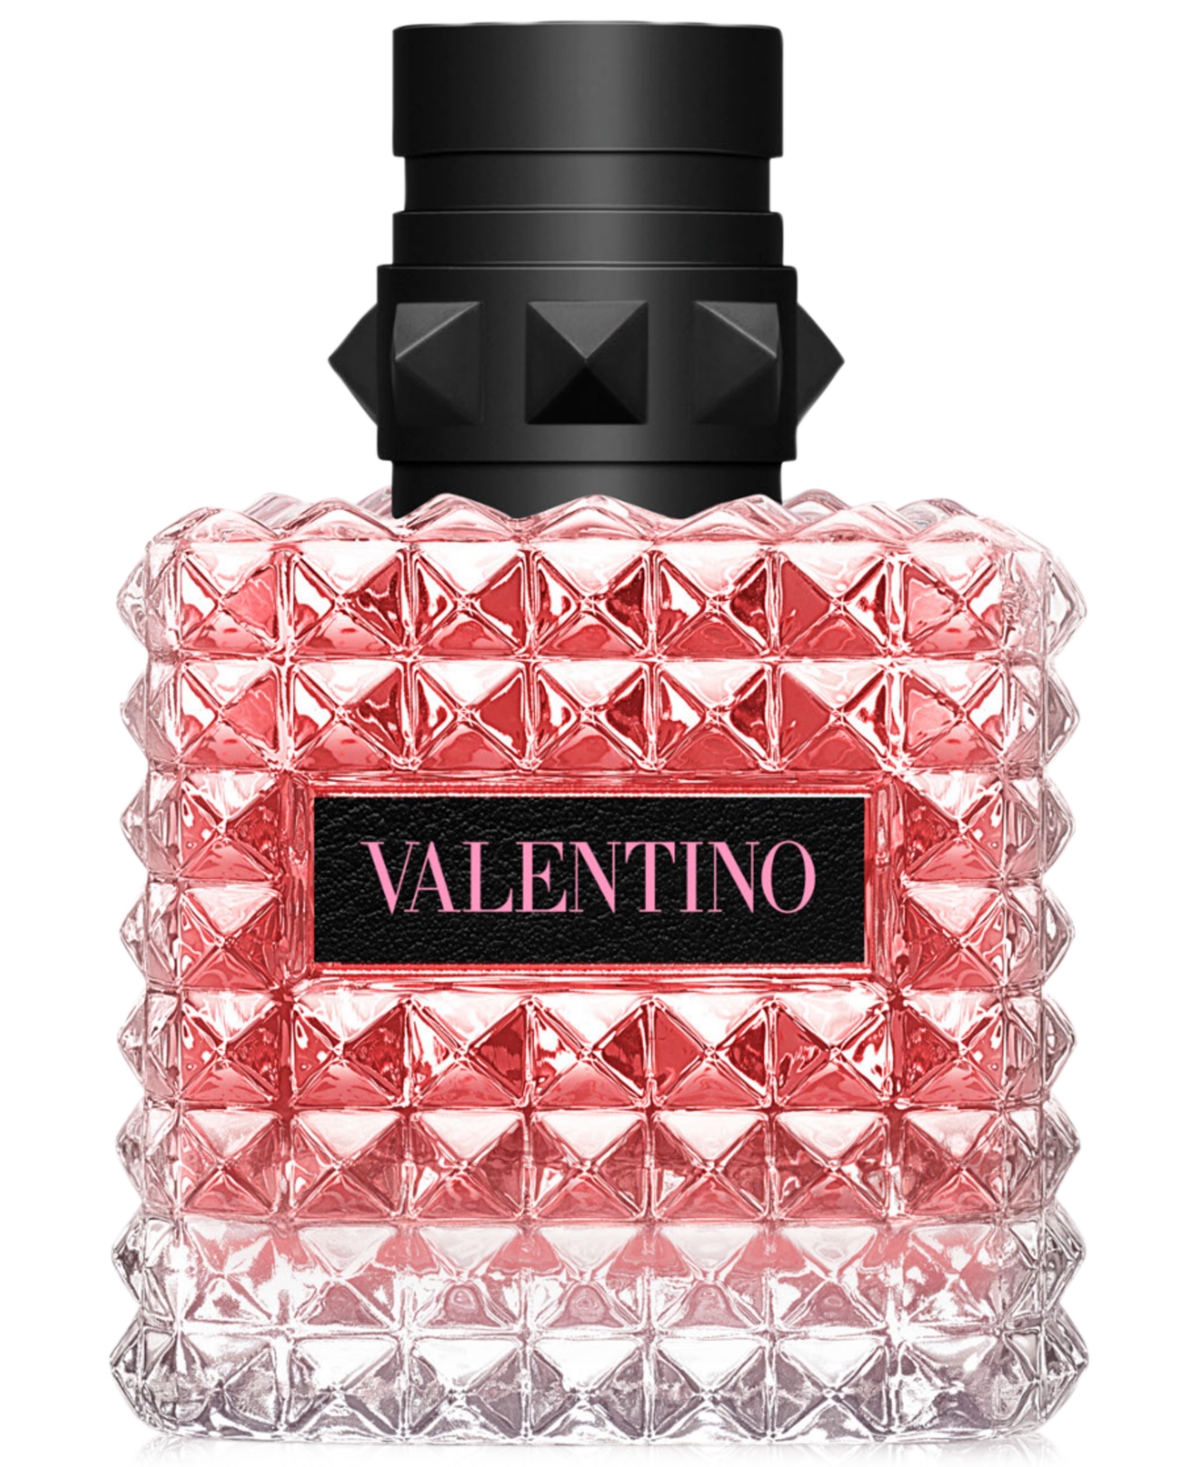 Valentino Donna Born Eau de Parfum Spray, 3.4-oz. -